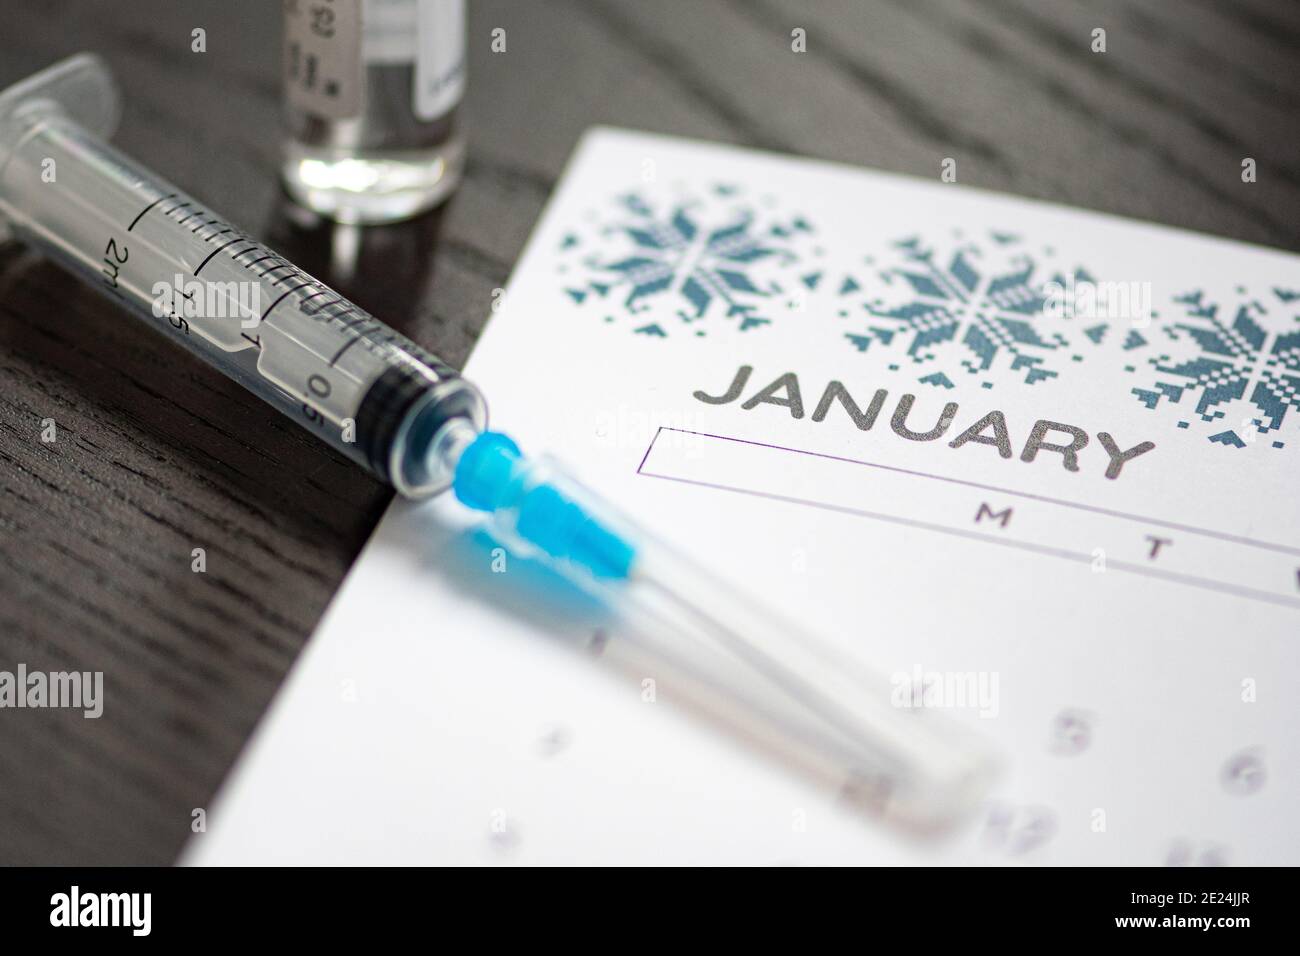 Seringue, flacon et calendrier avec mois de janvier sur une table noire prête à être utilisée. Antécédents de vaccin Covid ou coronavirus Banque D'Images